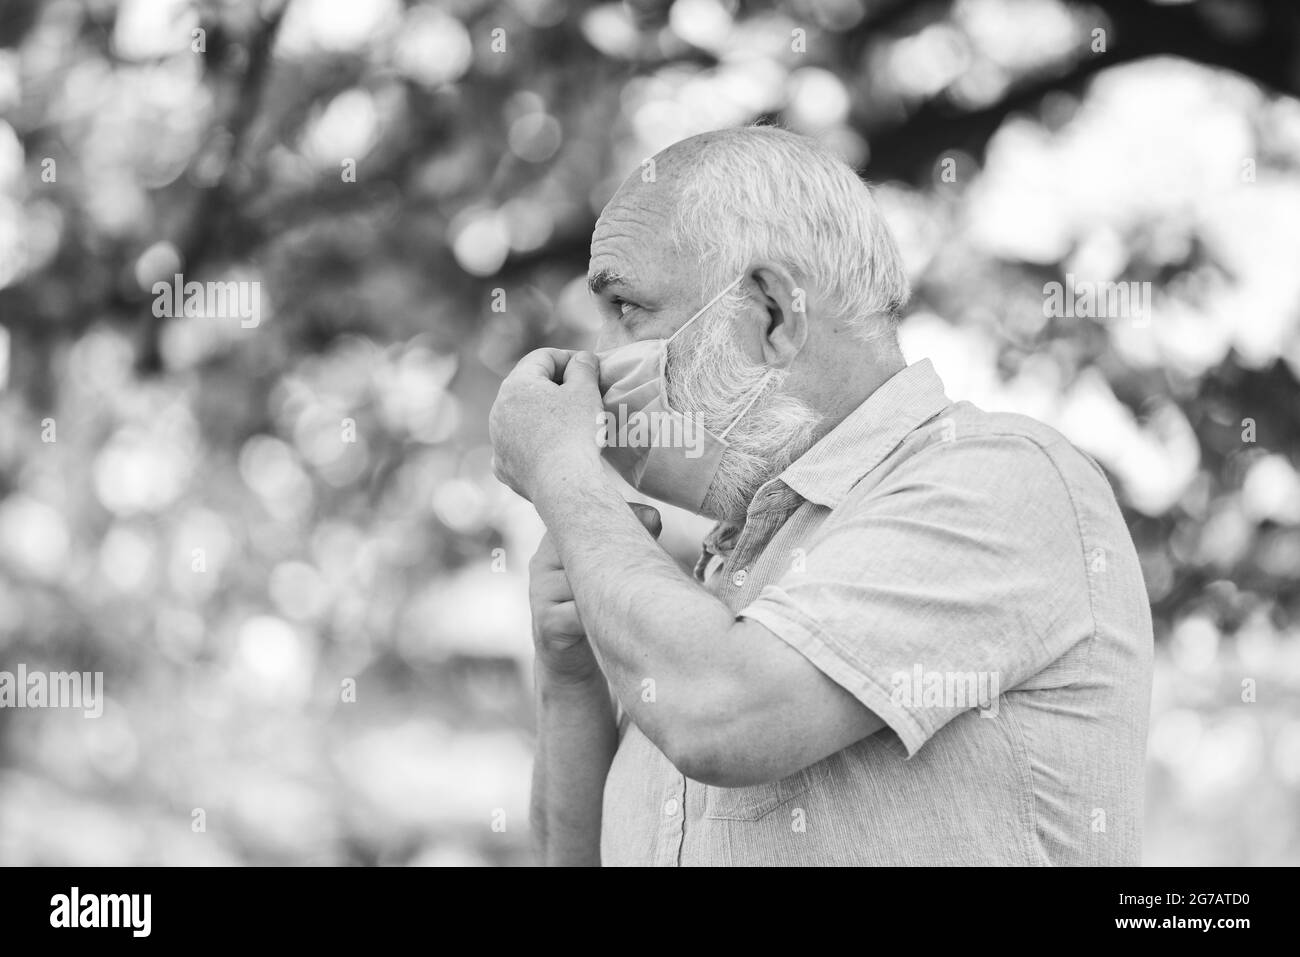 Pandémie de coronavirus. Homme âgé portant un masque. Mesures de sécurité. Soutenir les personnes âgées pendant le verrouillage du coronavirus et la prise de distance sociale. Pandémie Banque D'Images